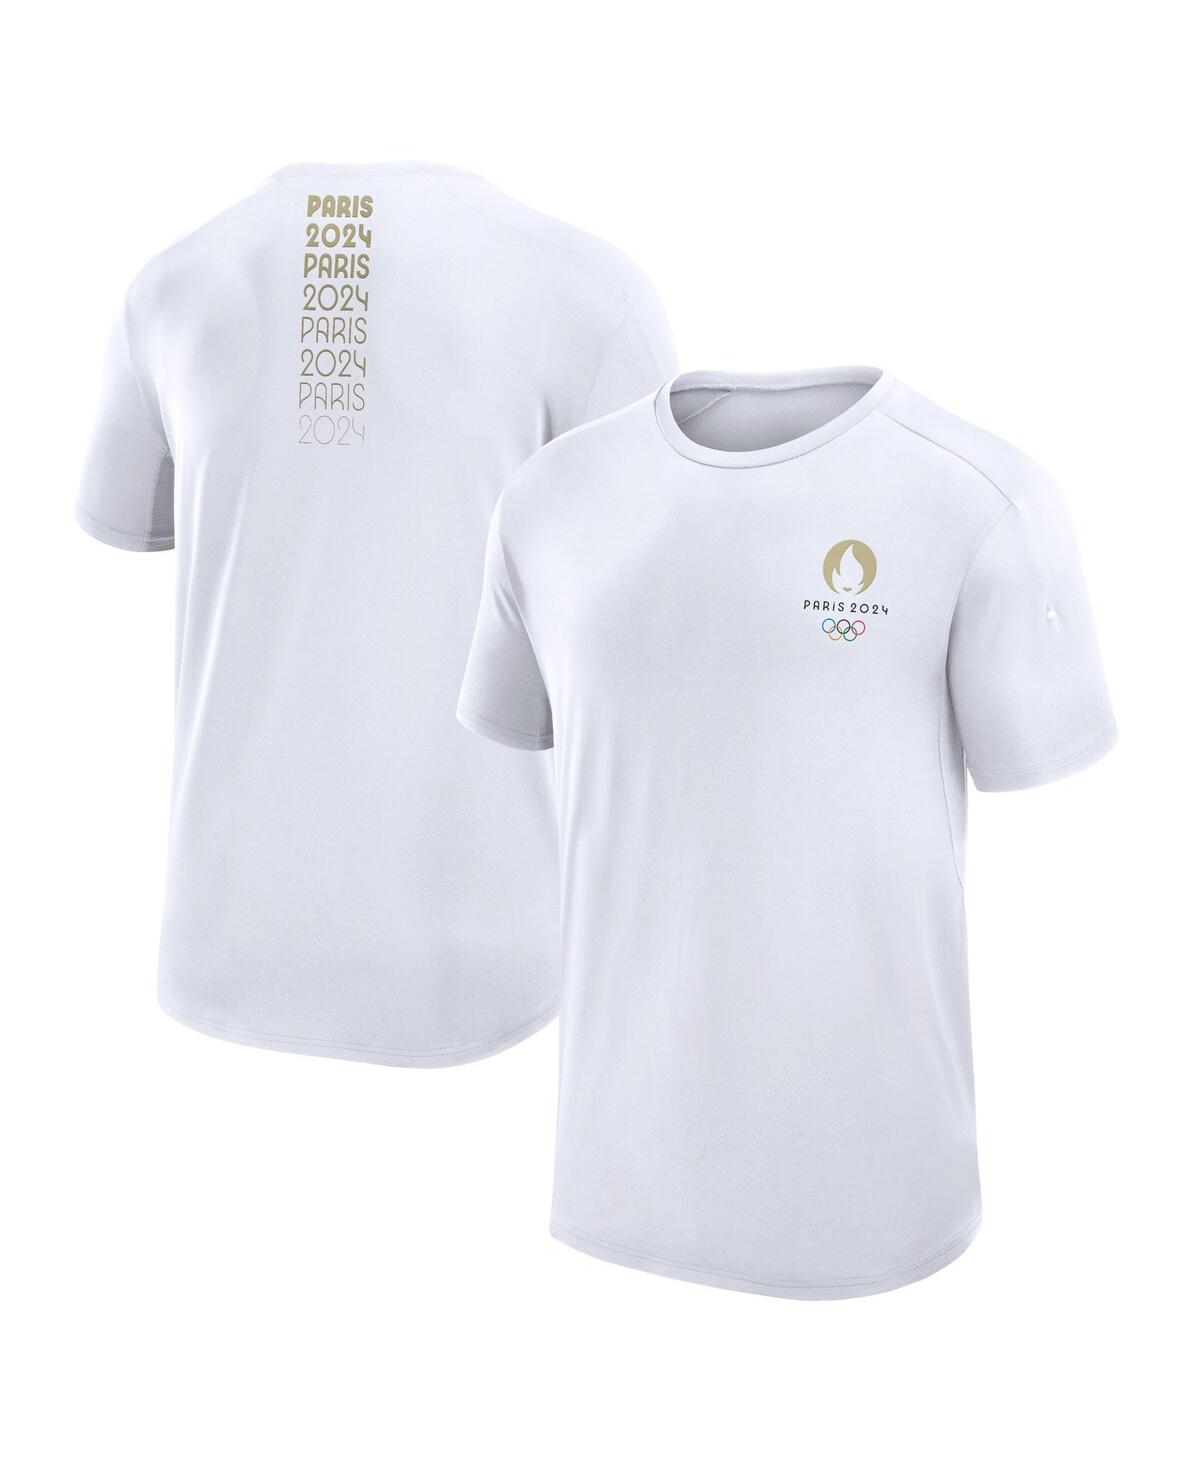 Shop Fanatics Branded Men's White Paris 2024 Tech T-shirt